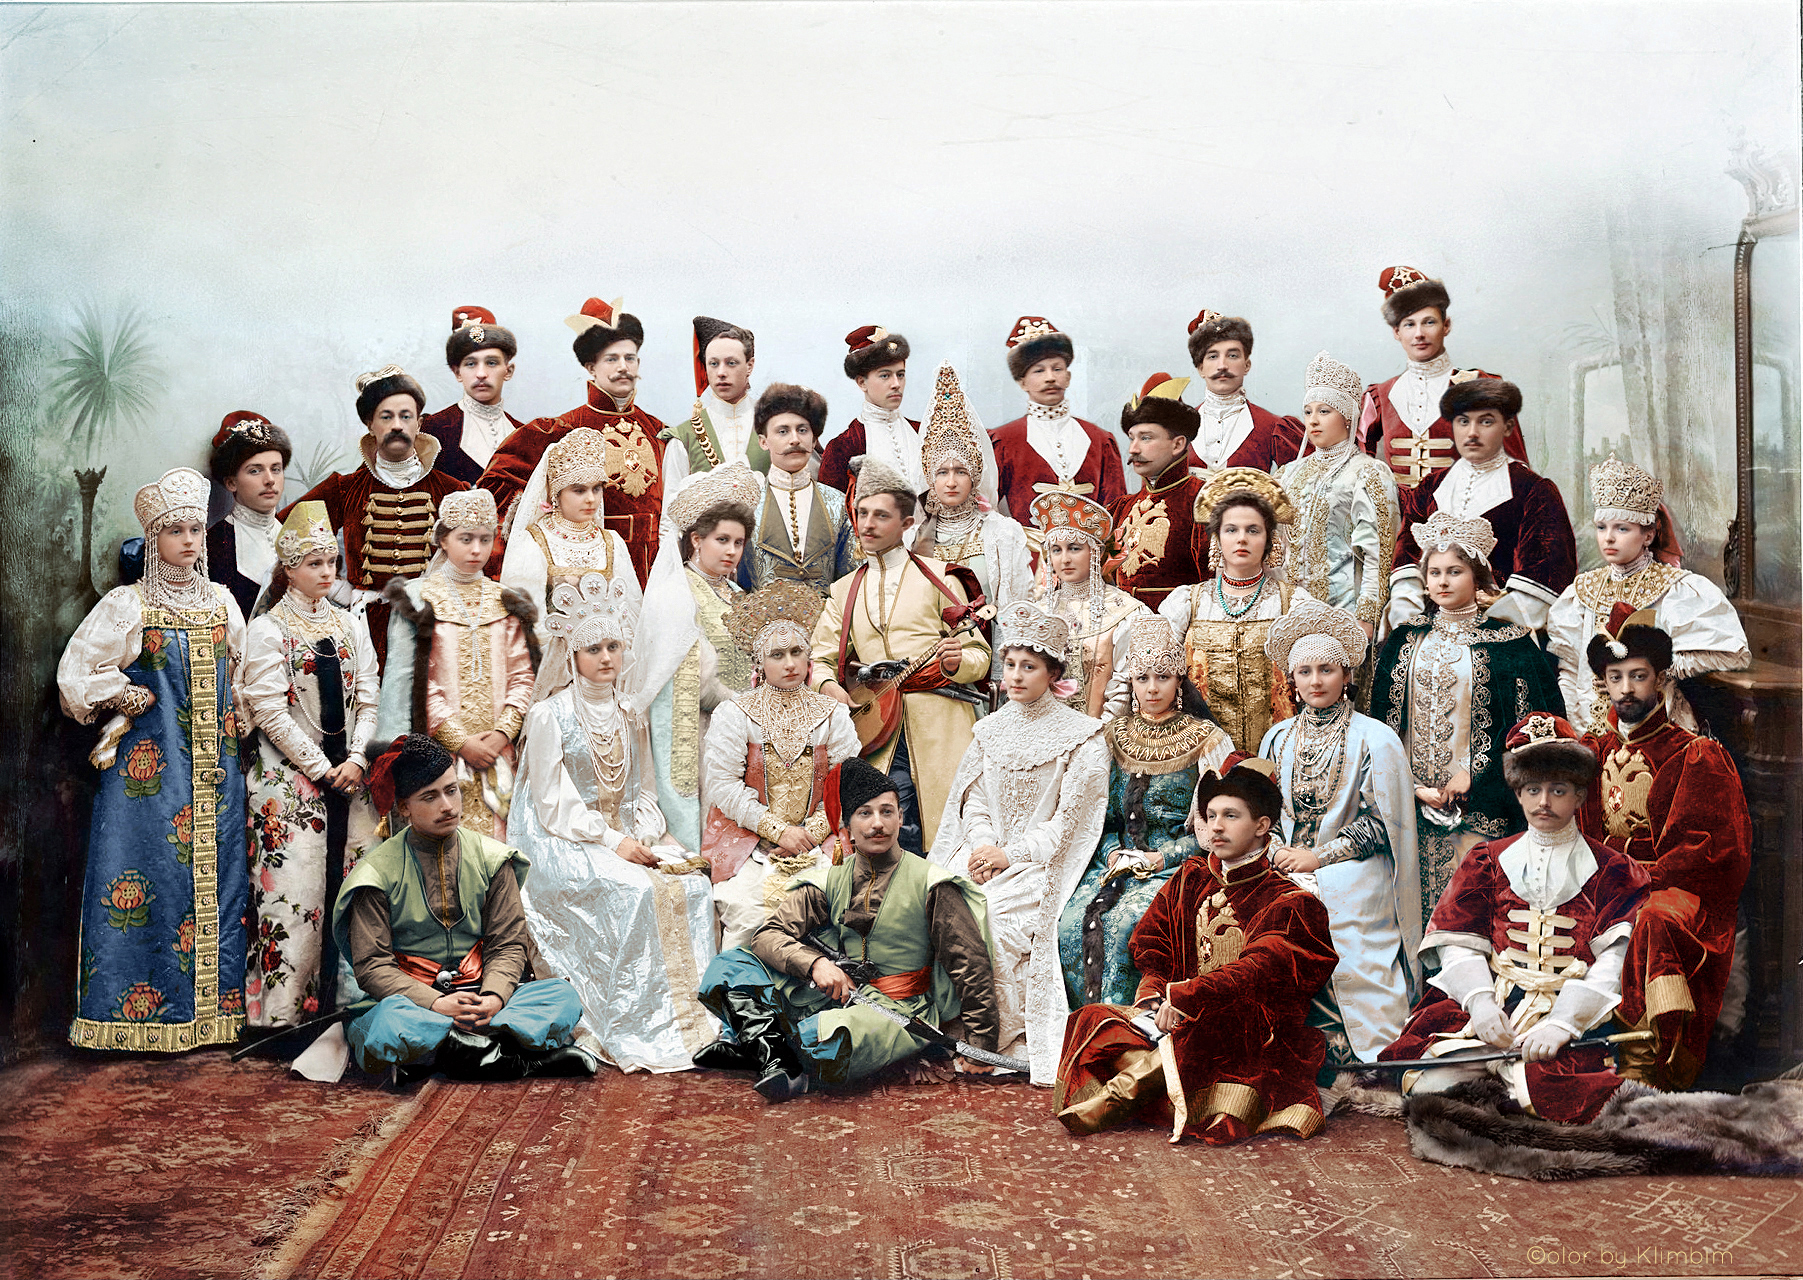 Костюмированный бал 1903 года - Winter Palace Costume Ball, St. Petersburg 1903.jpg